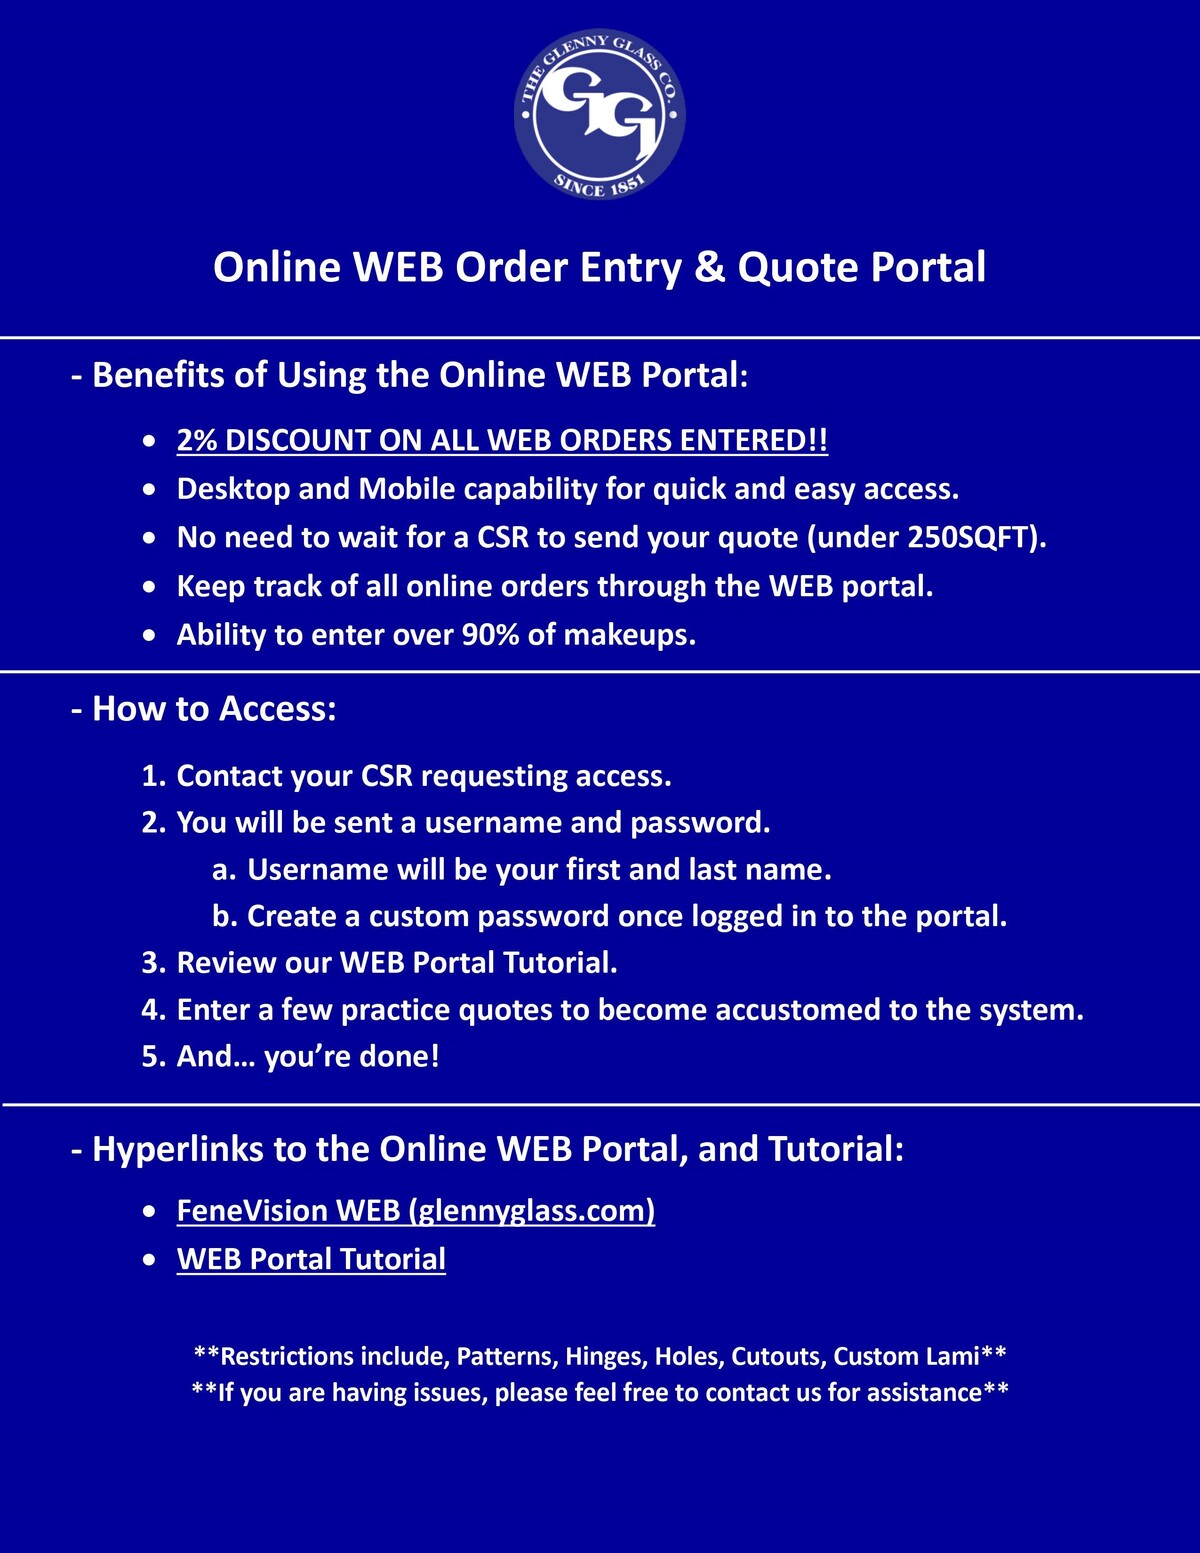 Online WEB OE Guidelines